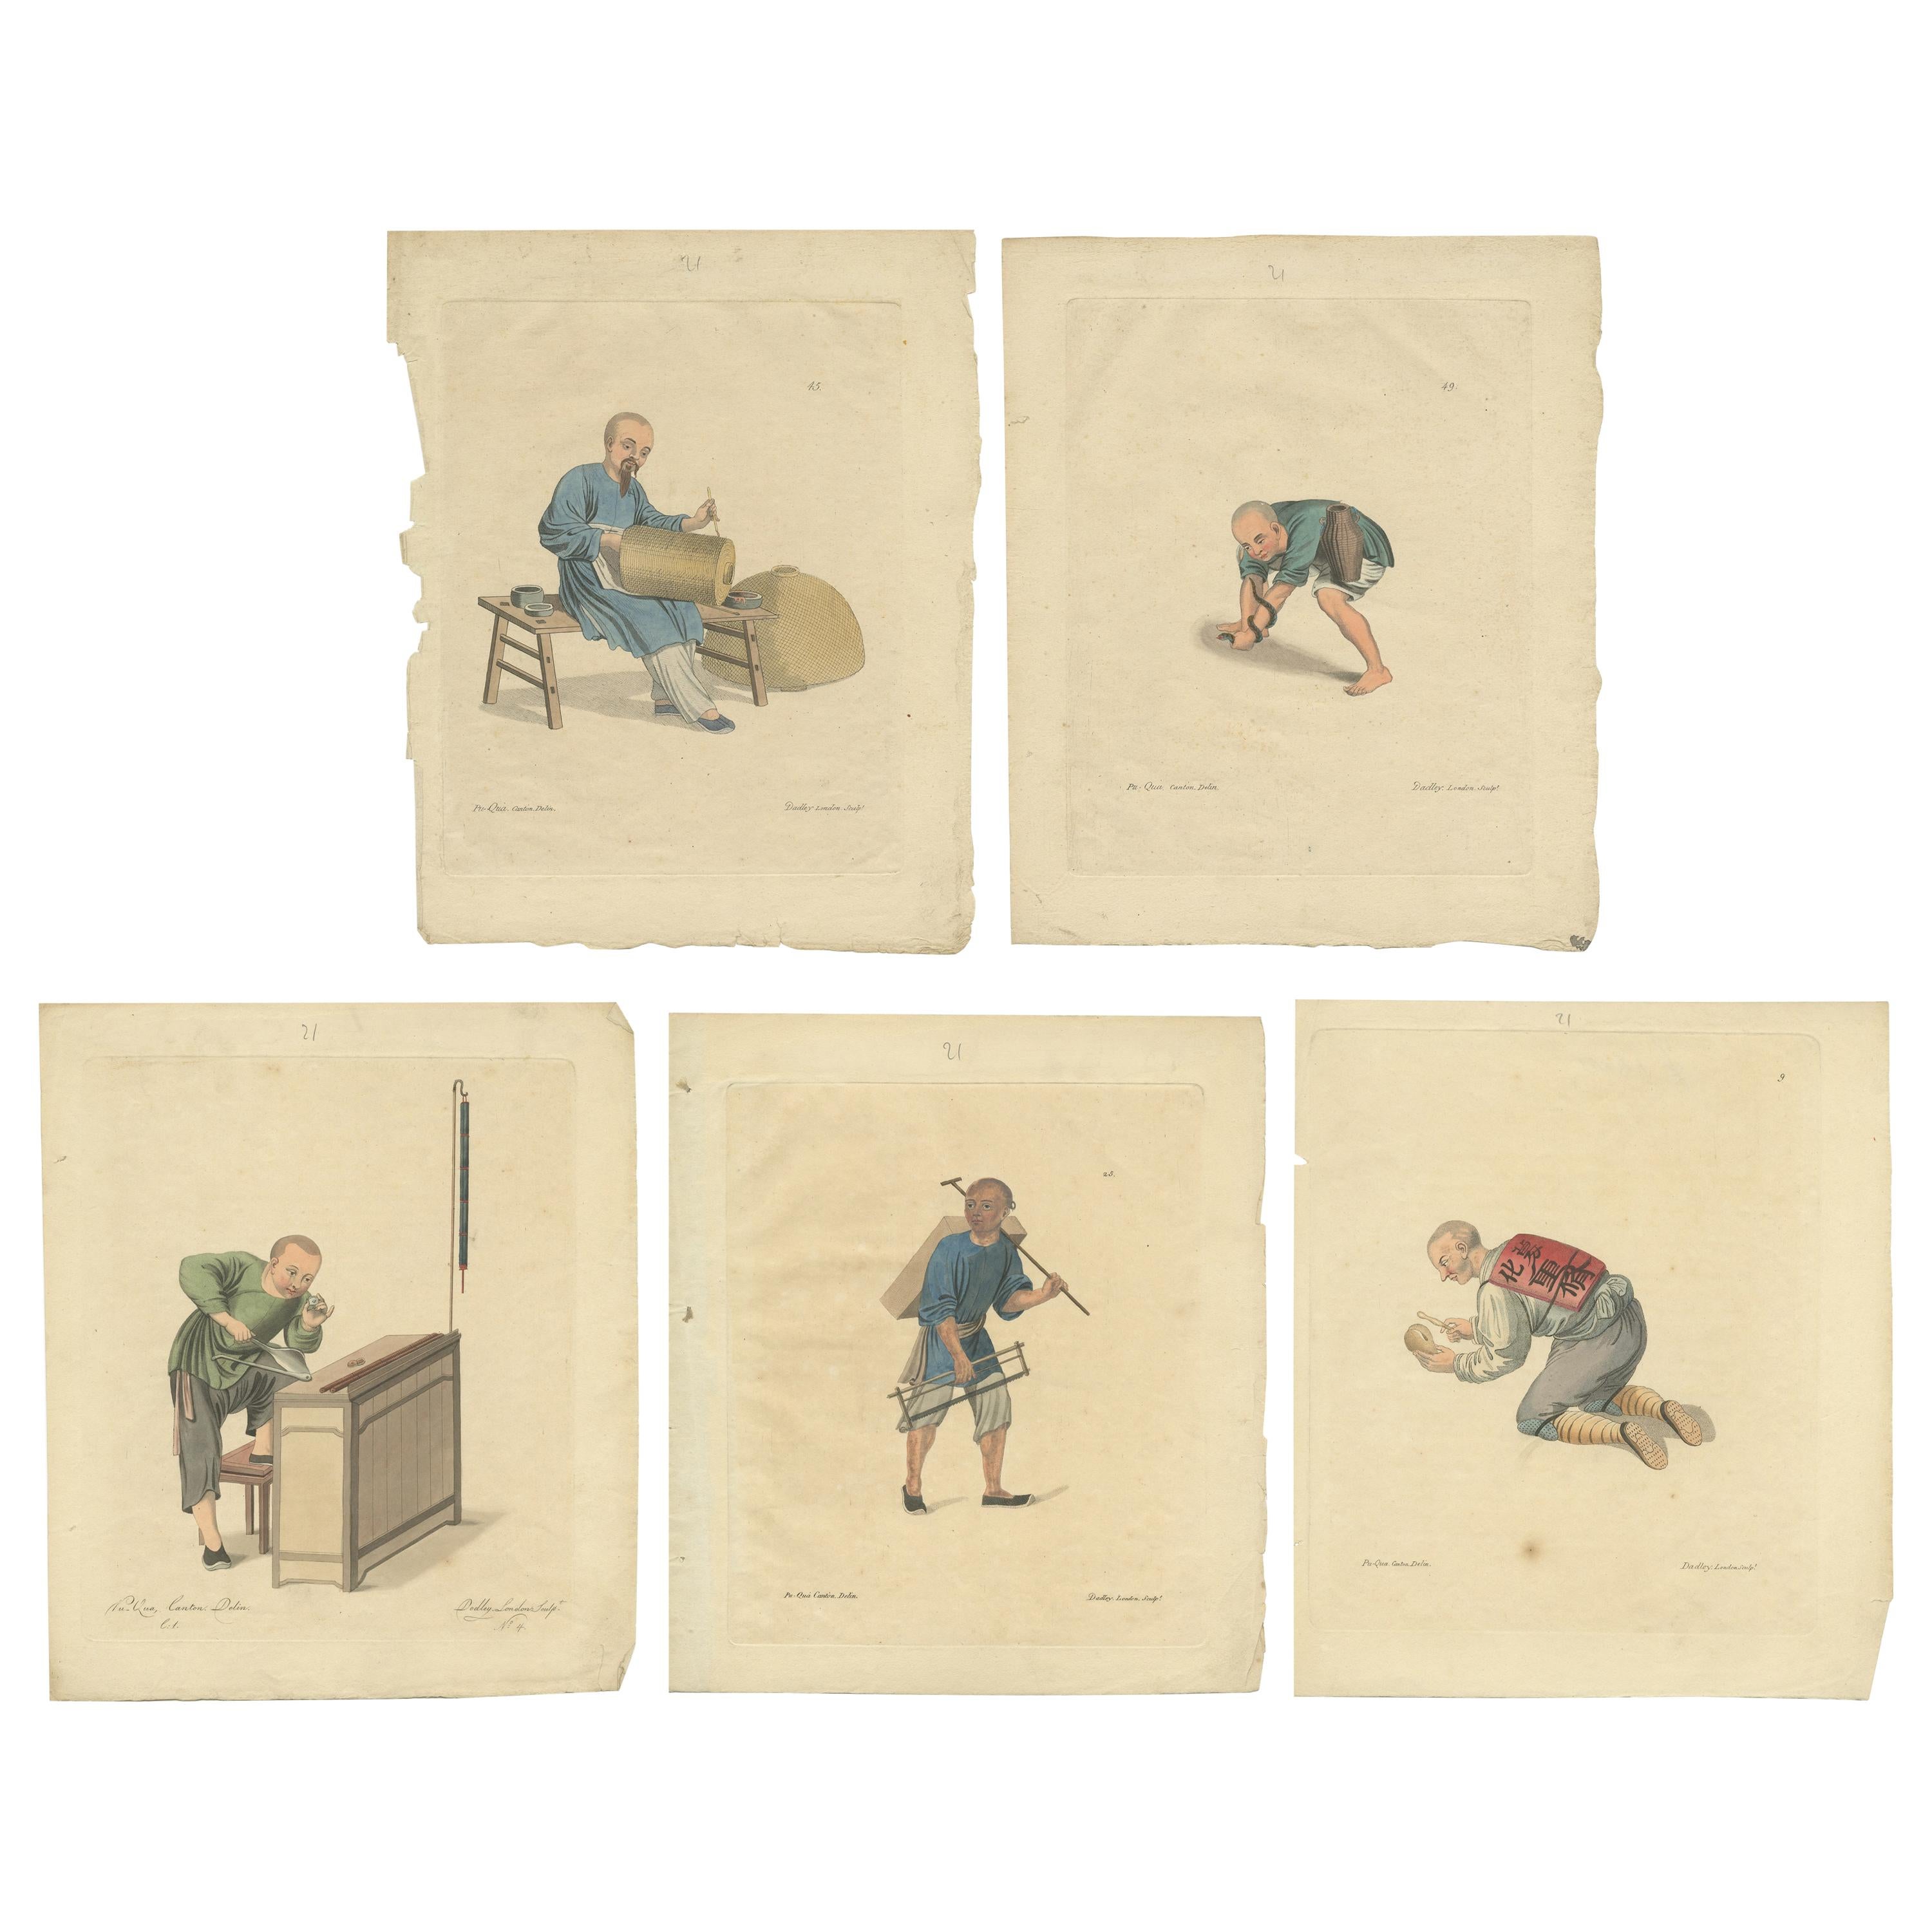 Ensemble de 5 estampes anciennes de professions en Chine par Dadley, datant d'environ 1810